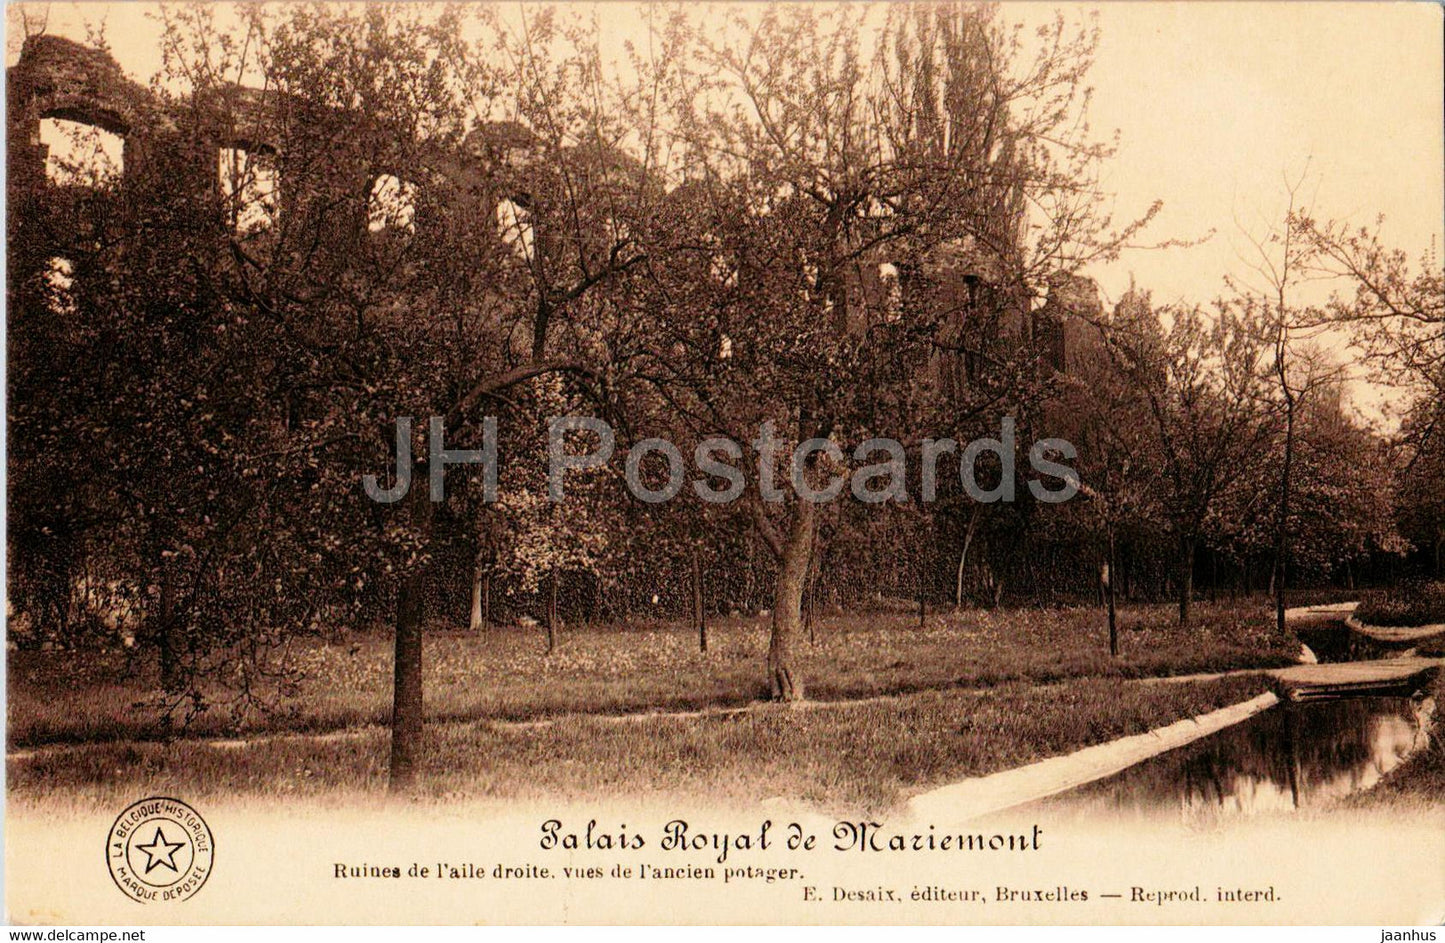 Morlanwelz - Palais Royal de Mariemont - Ruines de l'aile droite - old postcard - Belgium - unused - JH Postcards